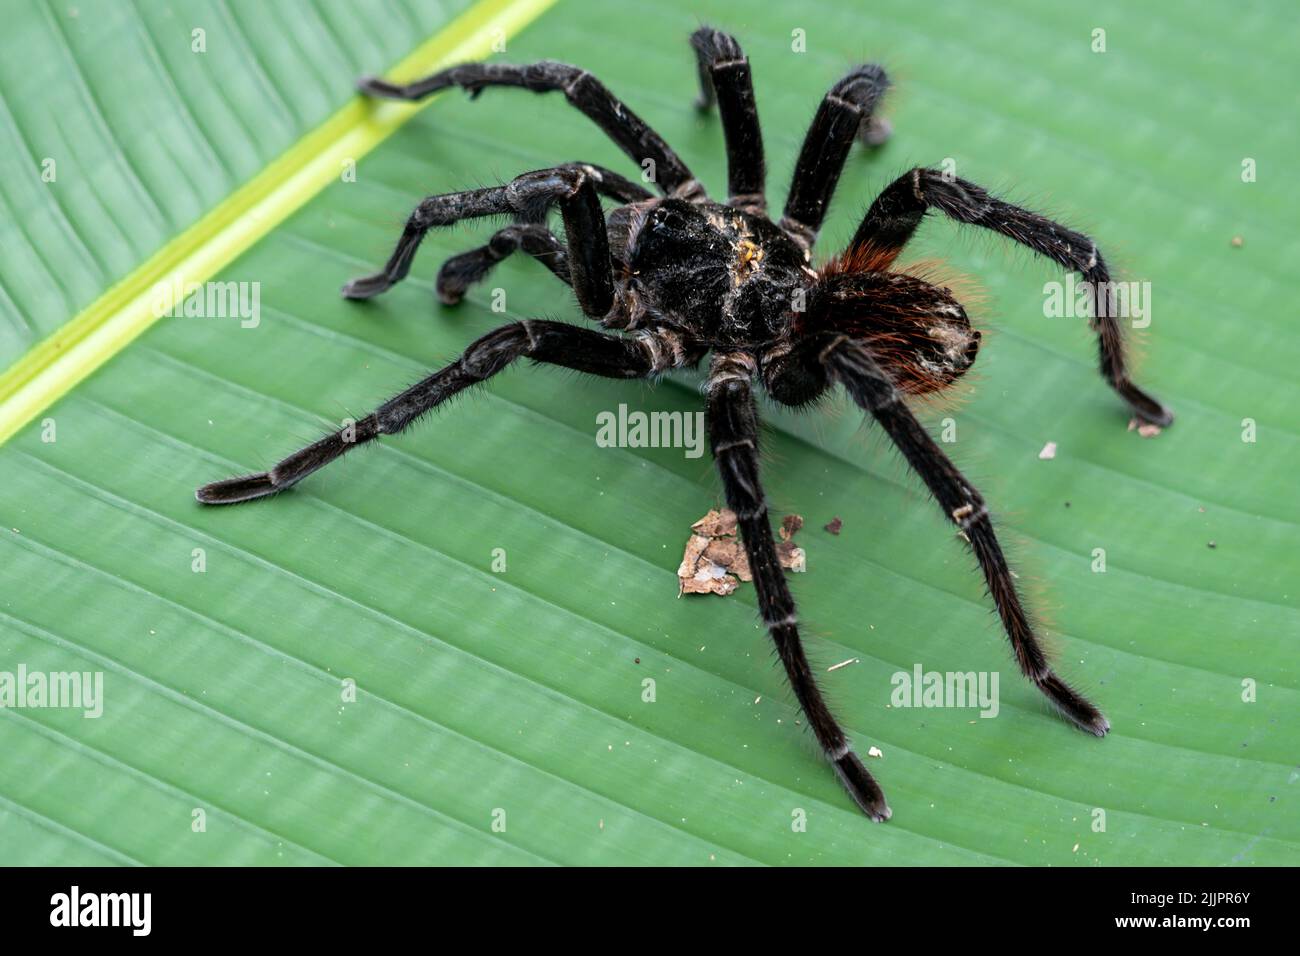 Le tarantula (Theraphosa blondi) de Goliath, en Amazonie péruvienne, est la plus grande araignée du monde Banque D'Images